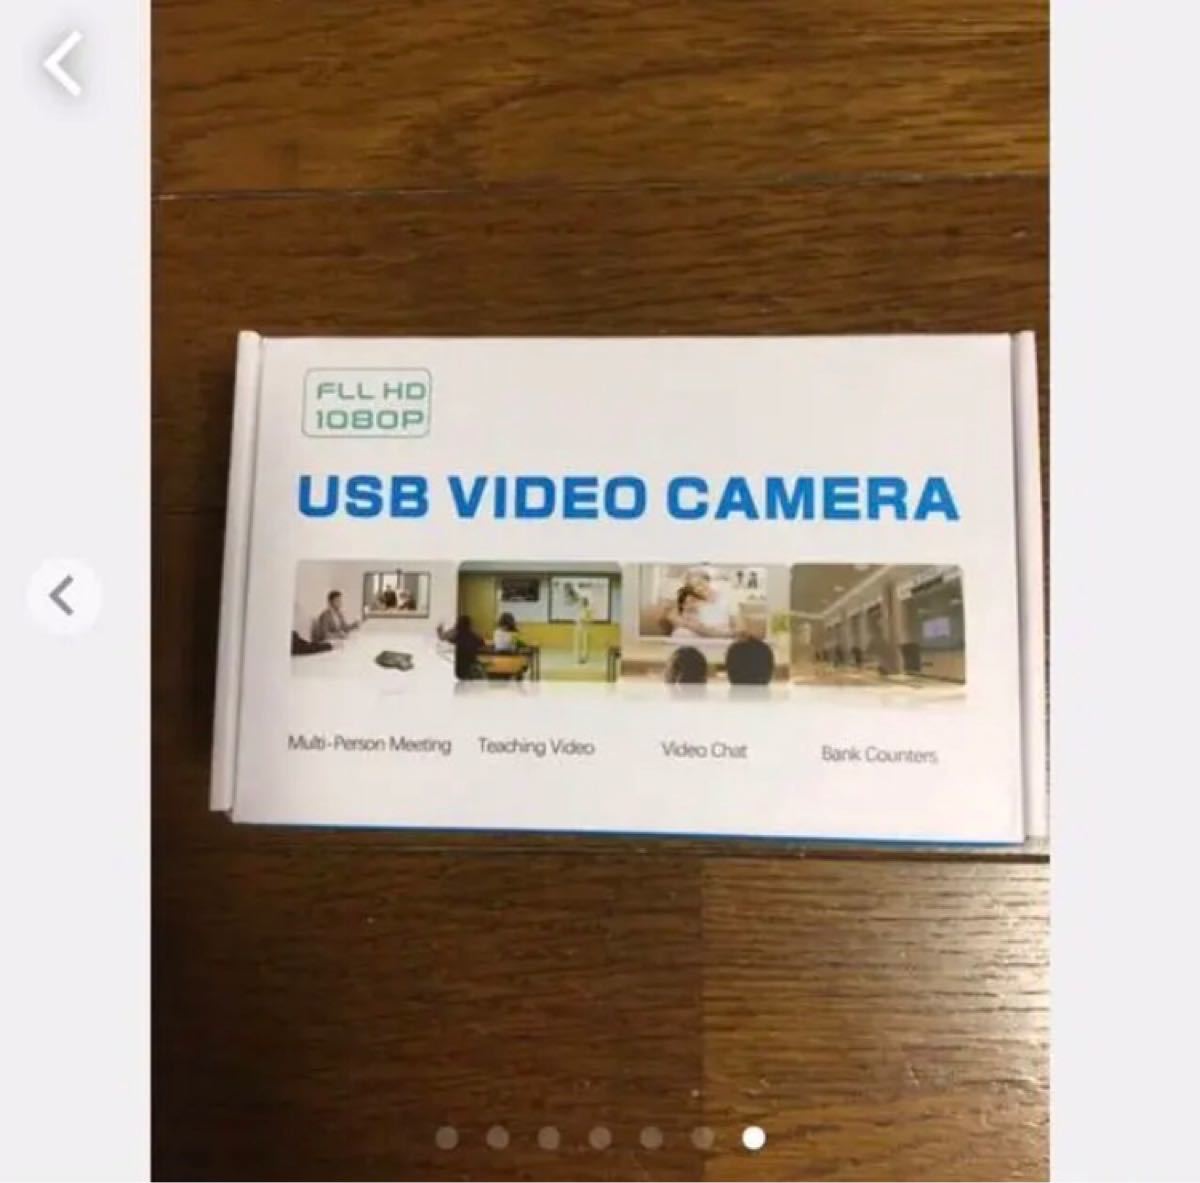 【最終SALE】webカメラHD108P内蔵マイク付き　PCカメラ高画質